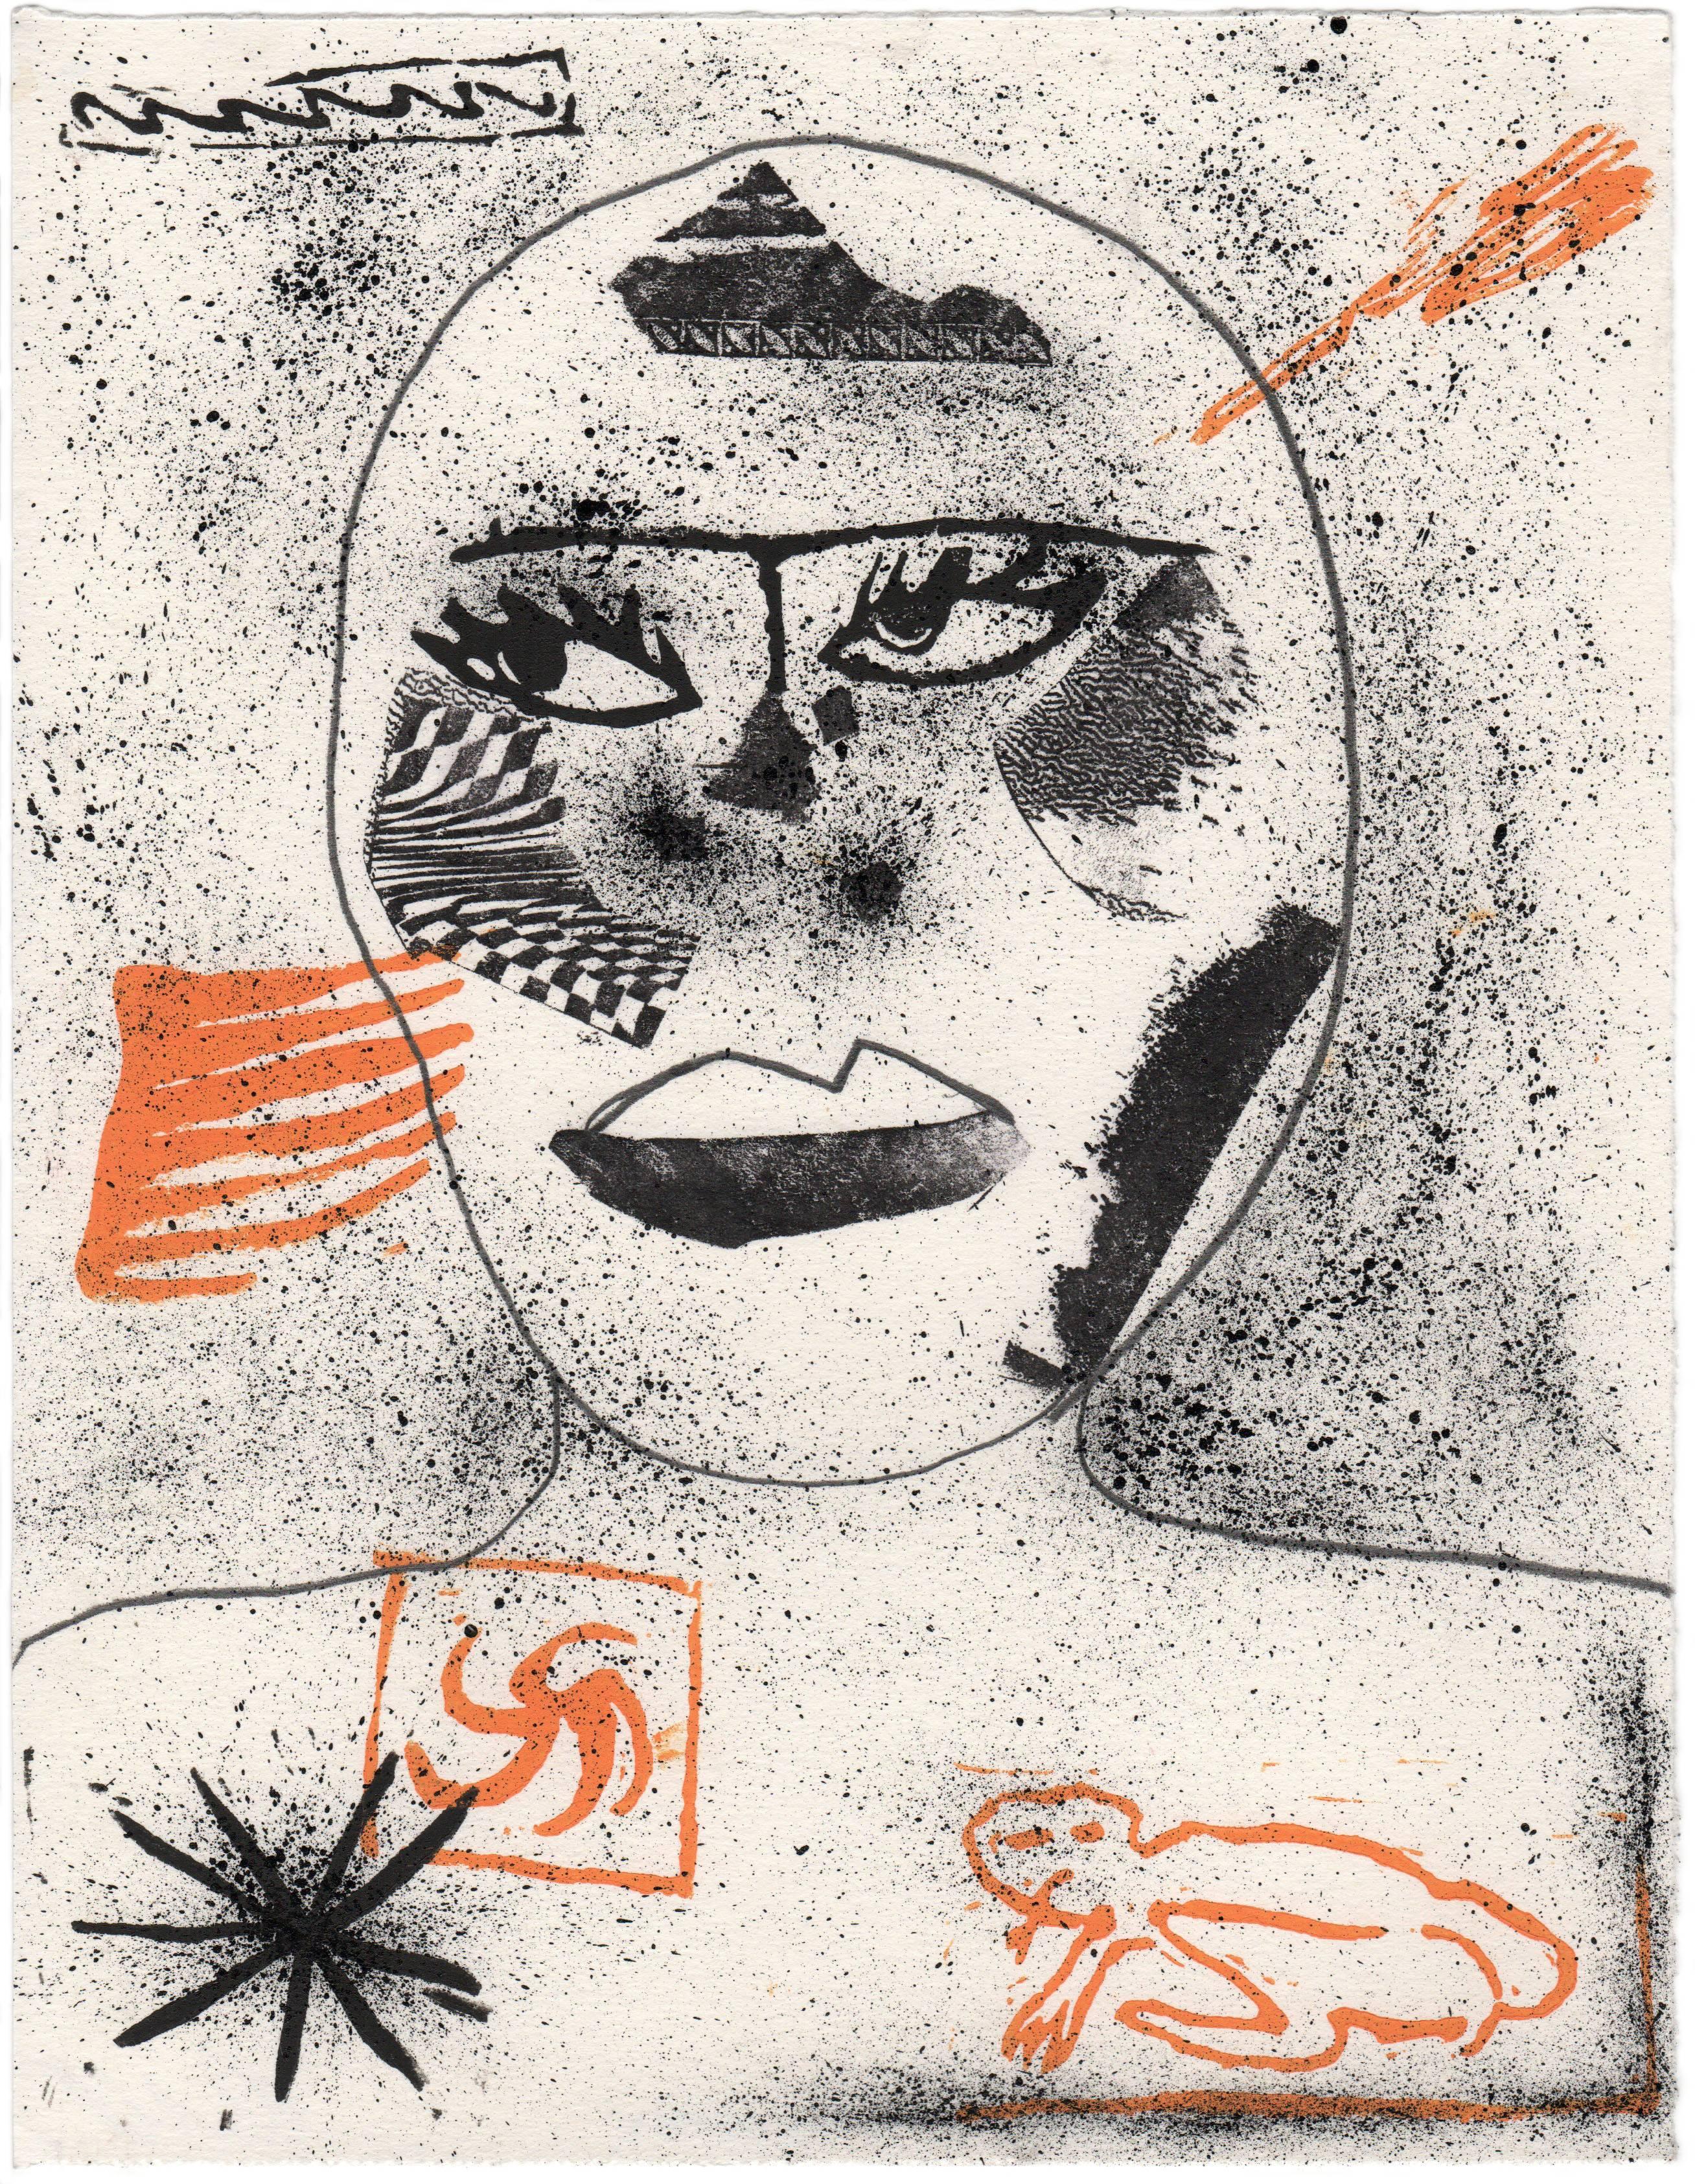 Ein Porträt von Gary Numan – Art von Olivia Gibb